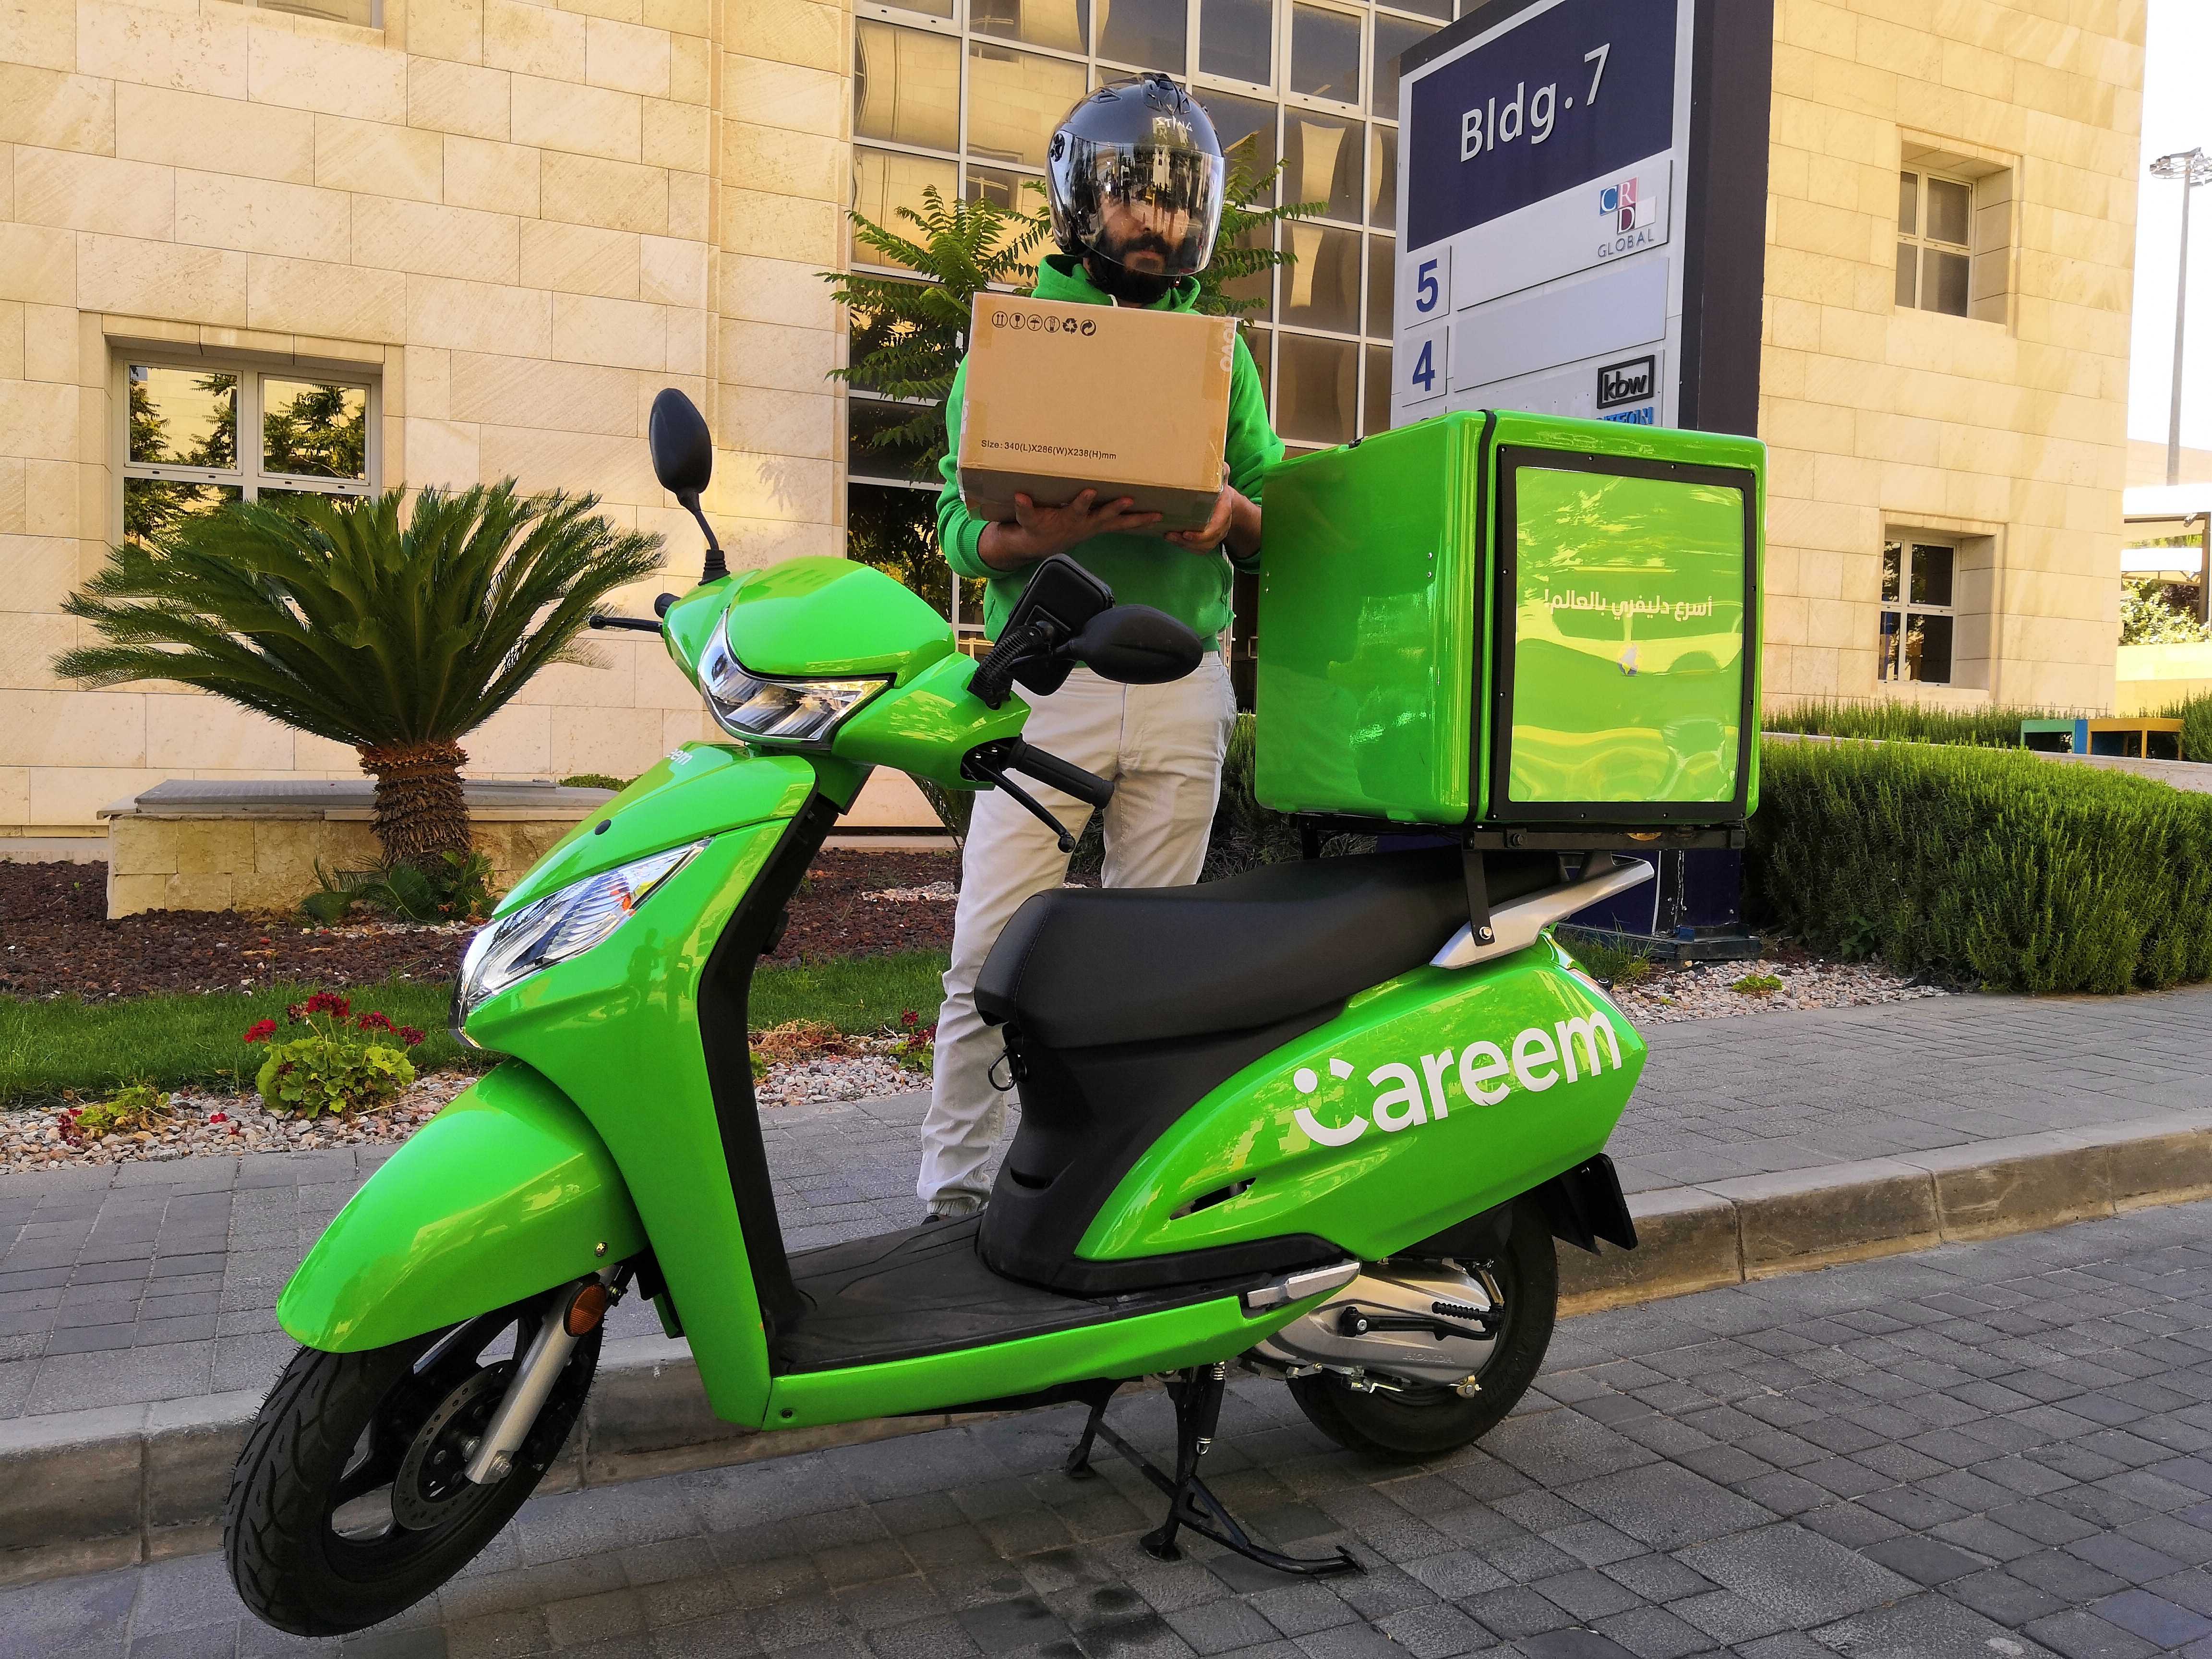 شركة 《كريم》 توفر لكباتنها لخدمات التوصيل برنامج تملك دراجات السكوتر بالتعاون مع بنك الاتحاد